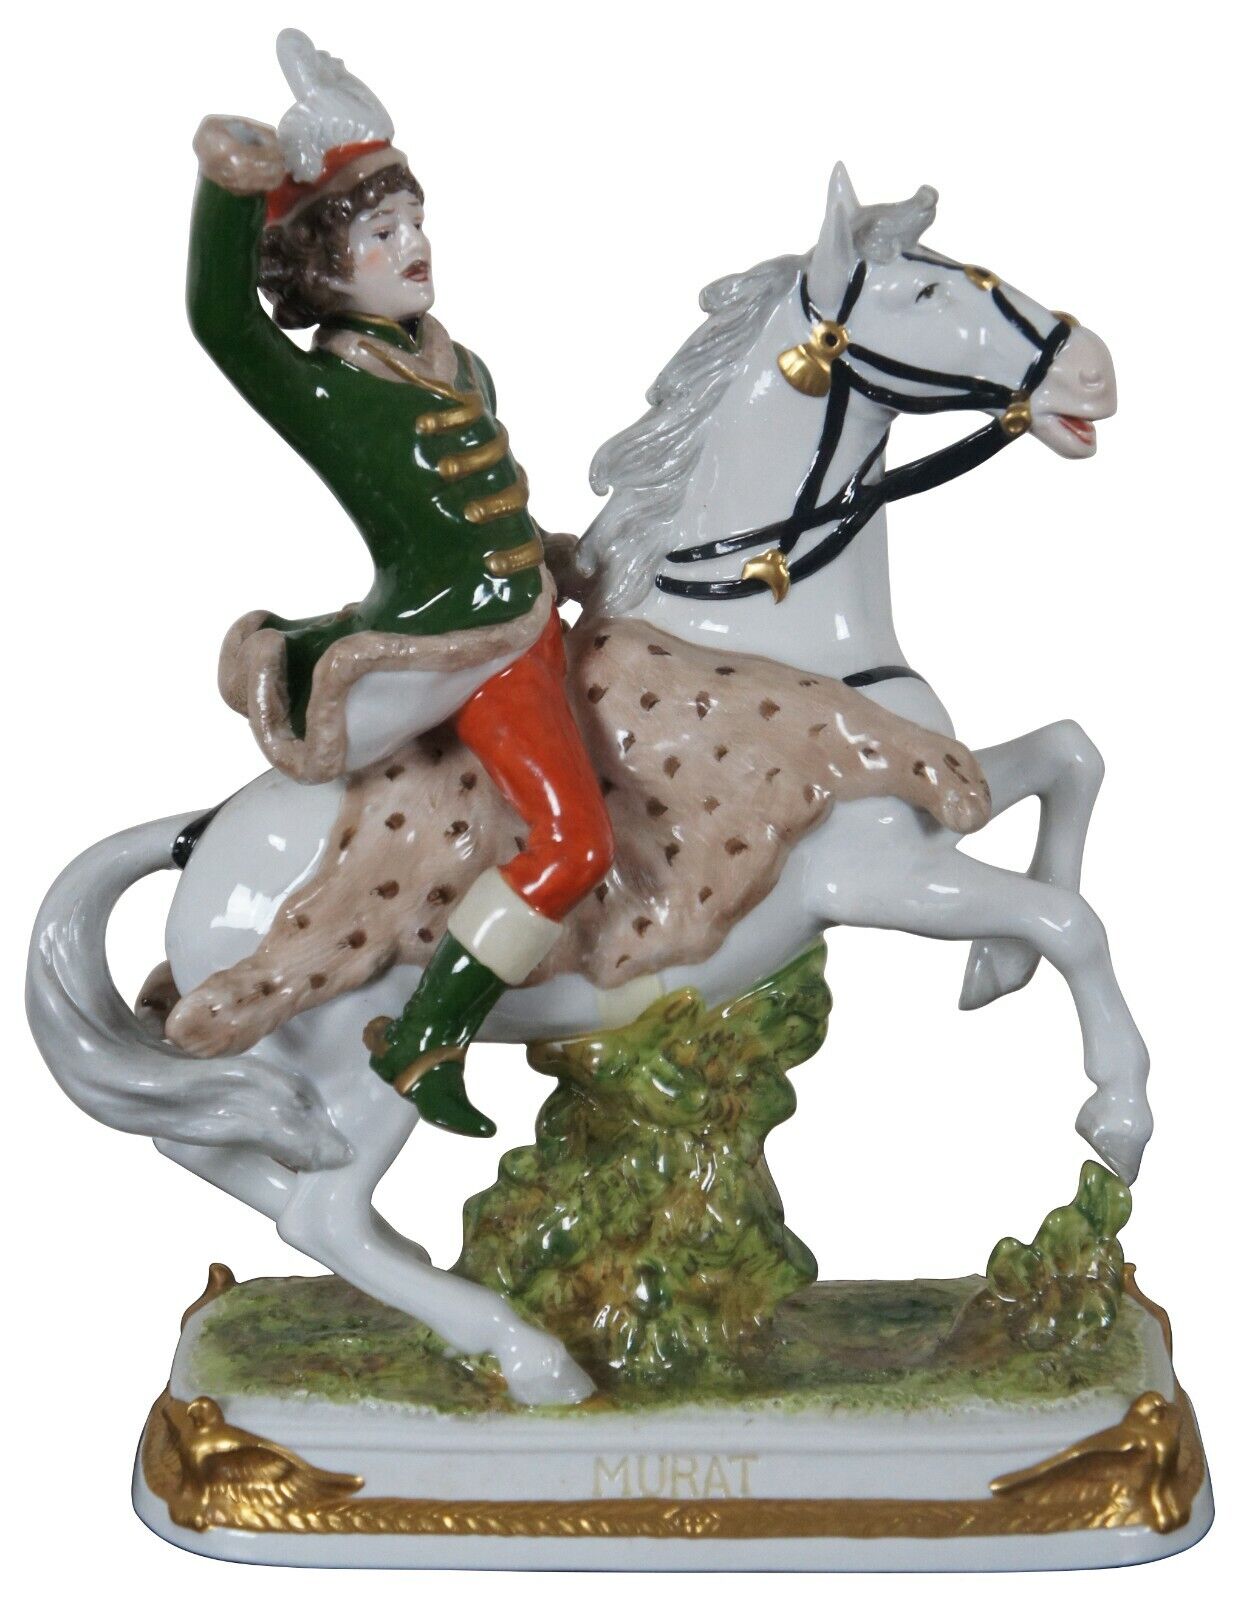 Antique Kister Porcelain Joachim Murat Figurine French Revolution Statue